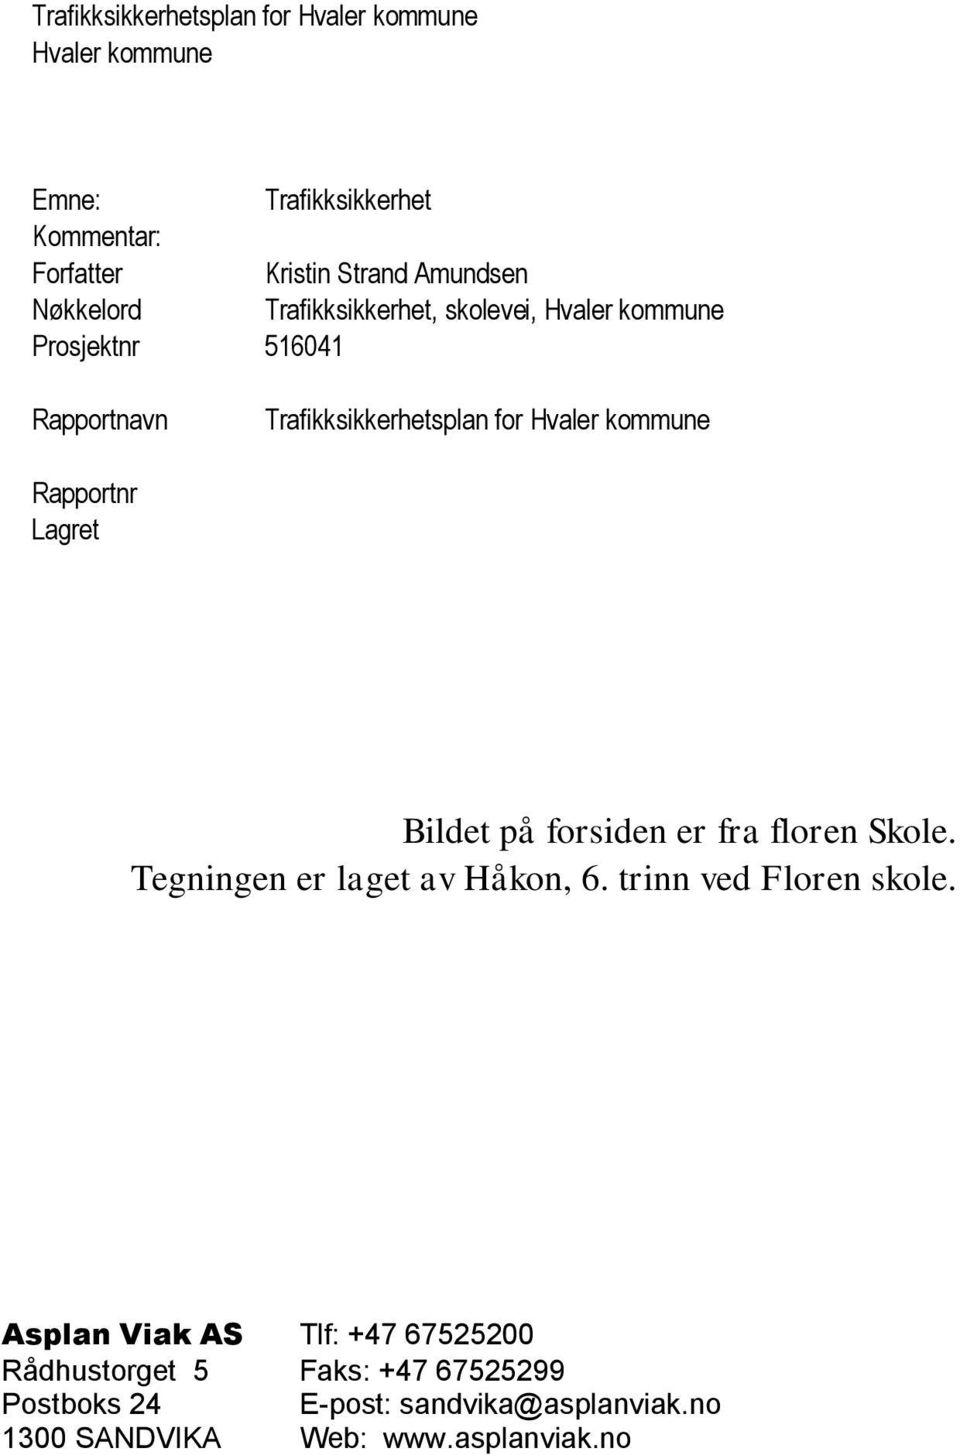 Rapportnr Lagret Bildet på forsiden er fra floren Skole. Tegningen er laget av Håkon, 6. trinn ved Floren skole.